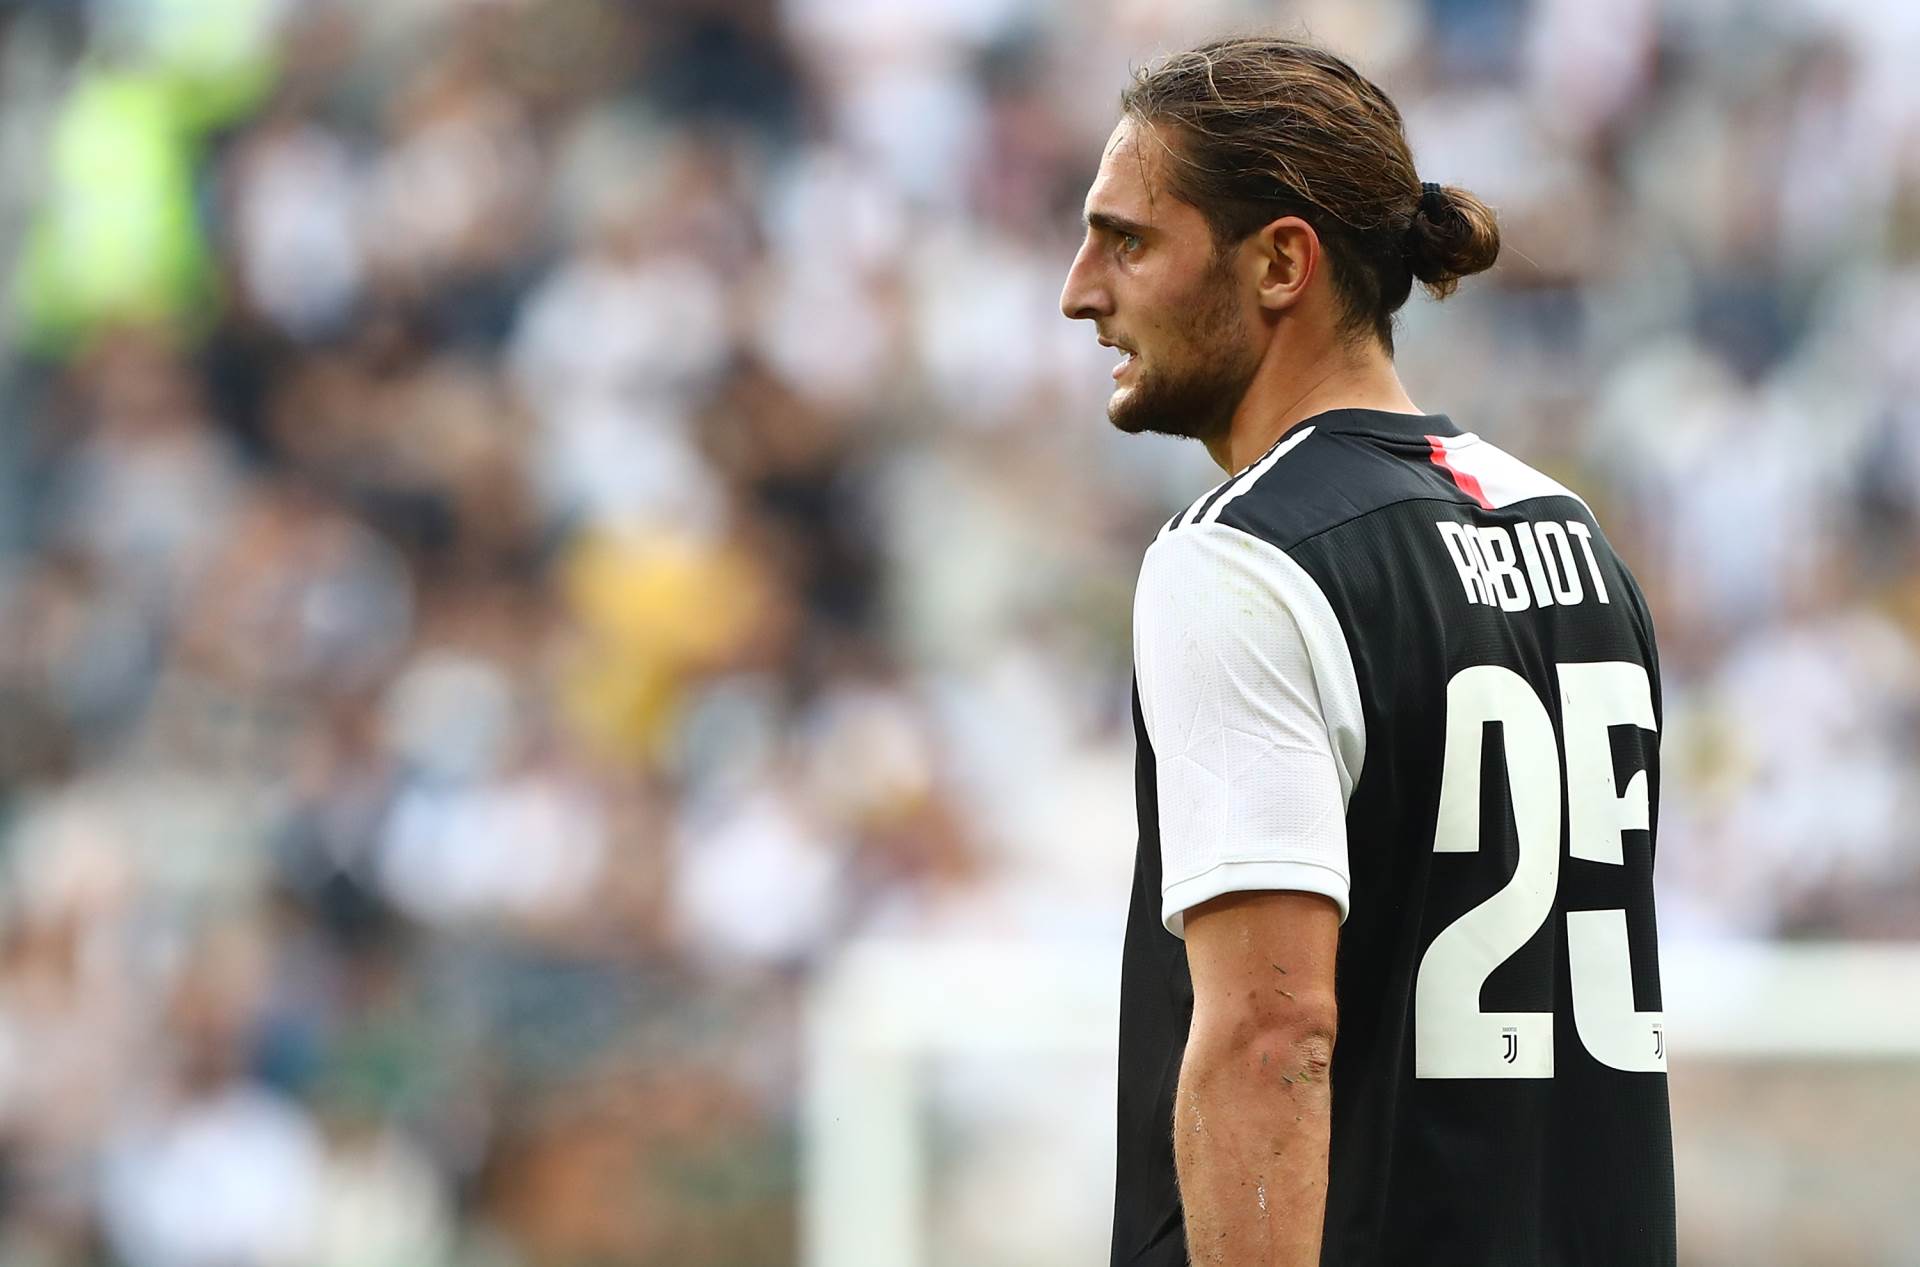  Juventus Rabio štrajk dolazi u Torino 